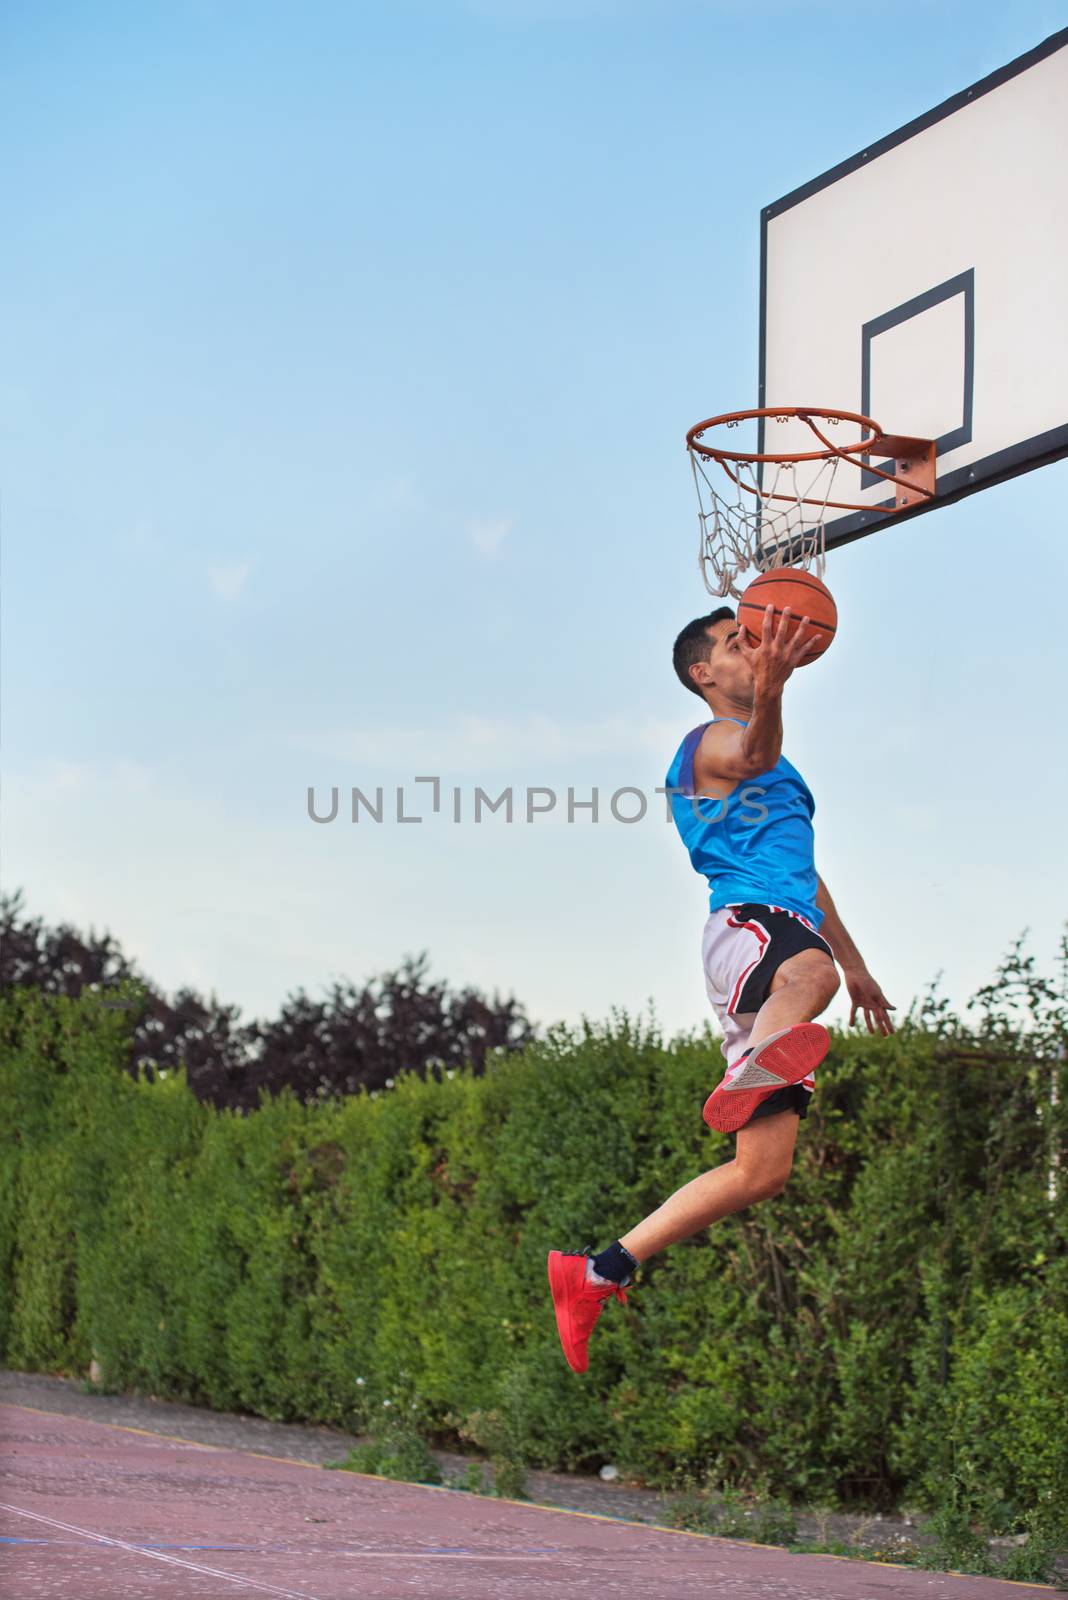 Basketball street player making a slam dunk by HERRAEZ